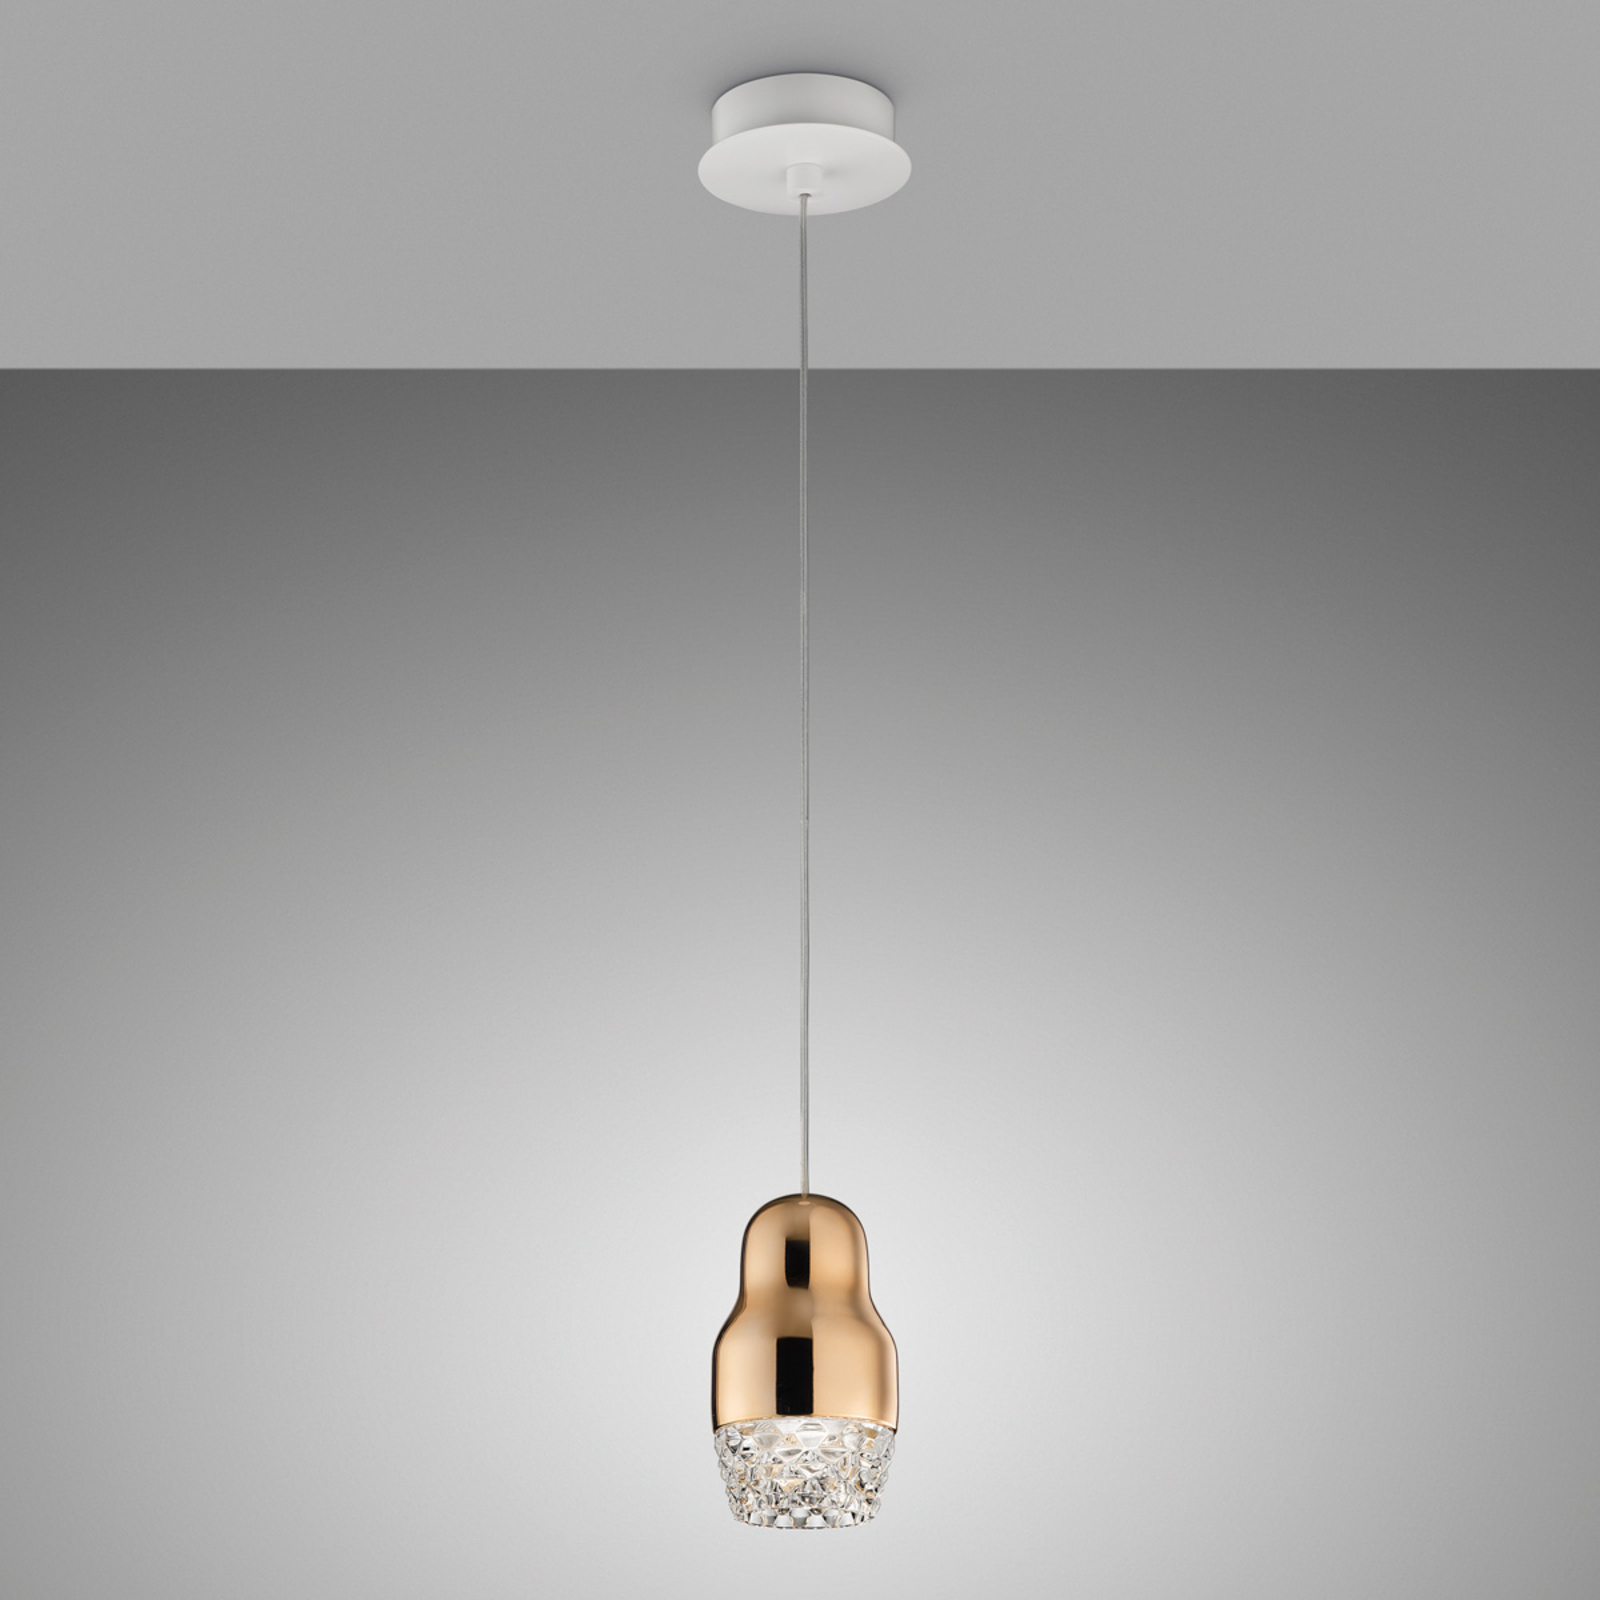 One-bulb LED hanging light Fedora rose gold